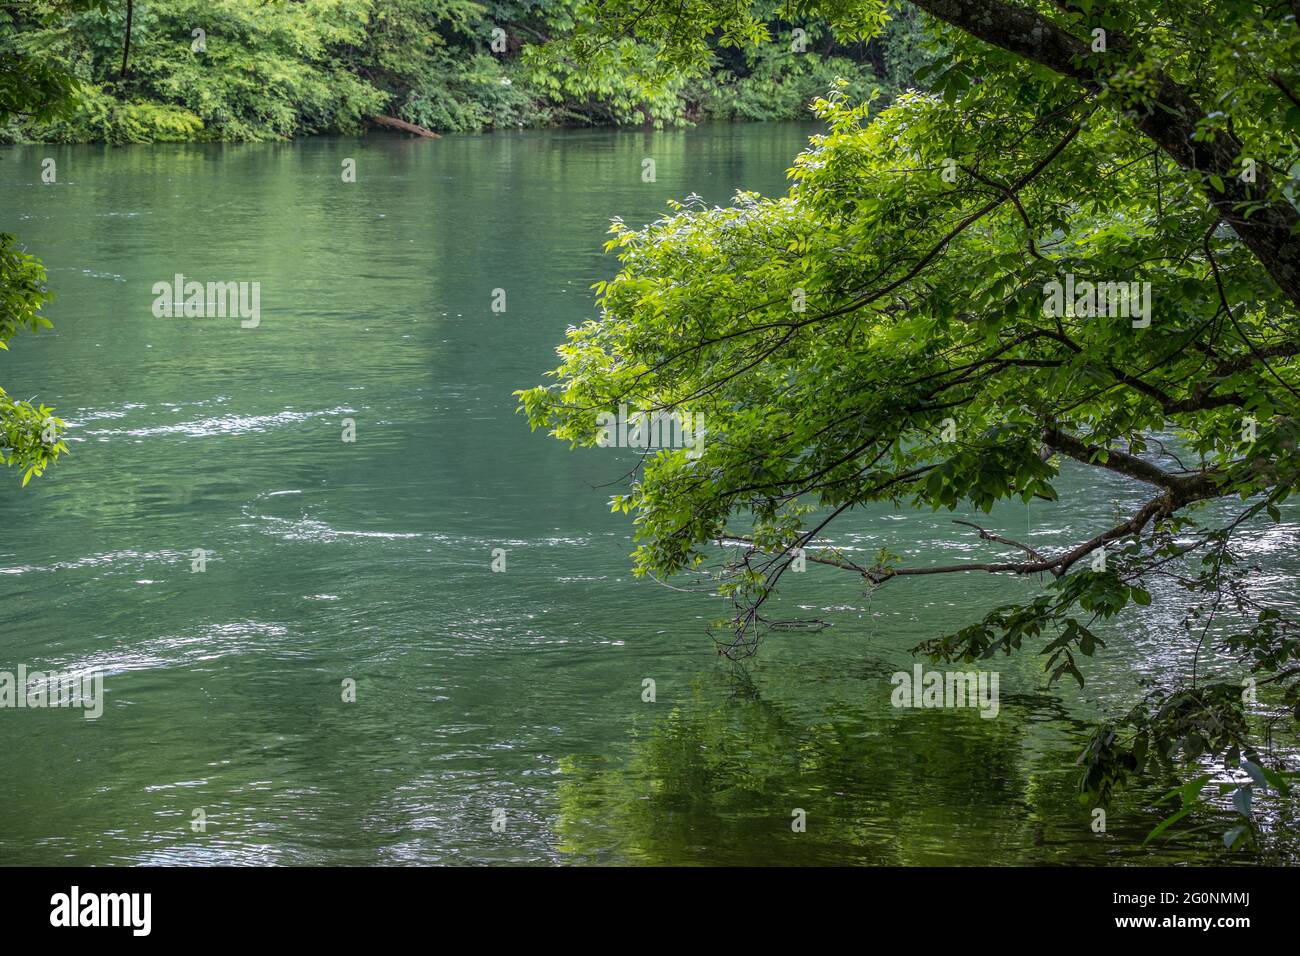 Una corrente in rapido movimento con l'acqua sopra la riva del fiume con gli alberi appesi in acqua in una giornata di sole in primavera Foto Stock